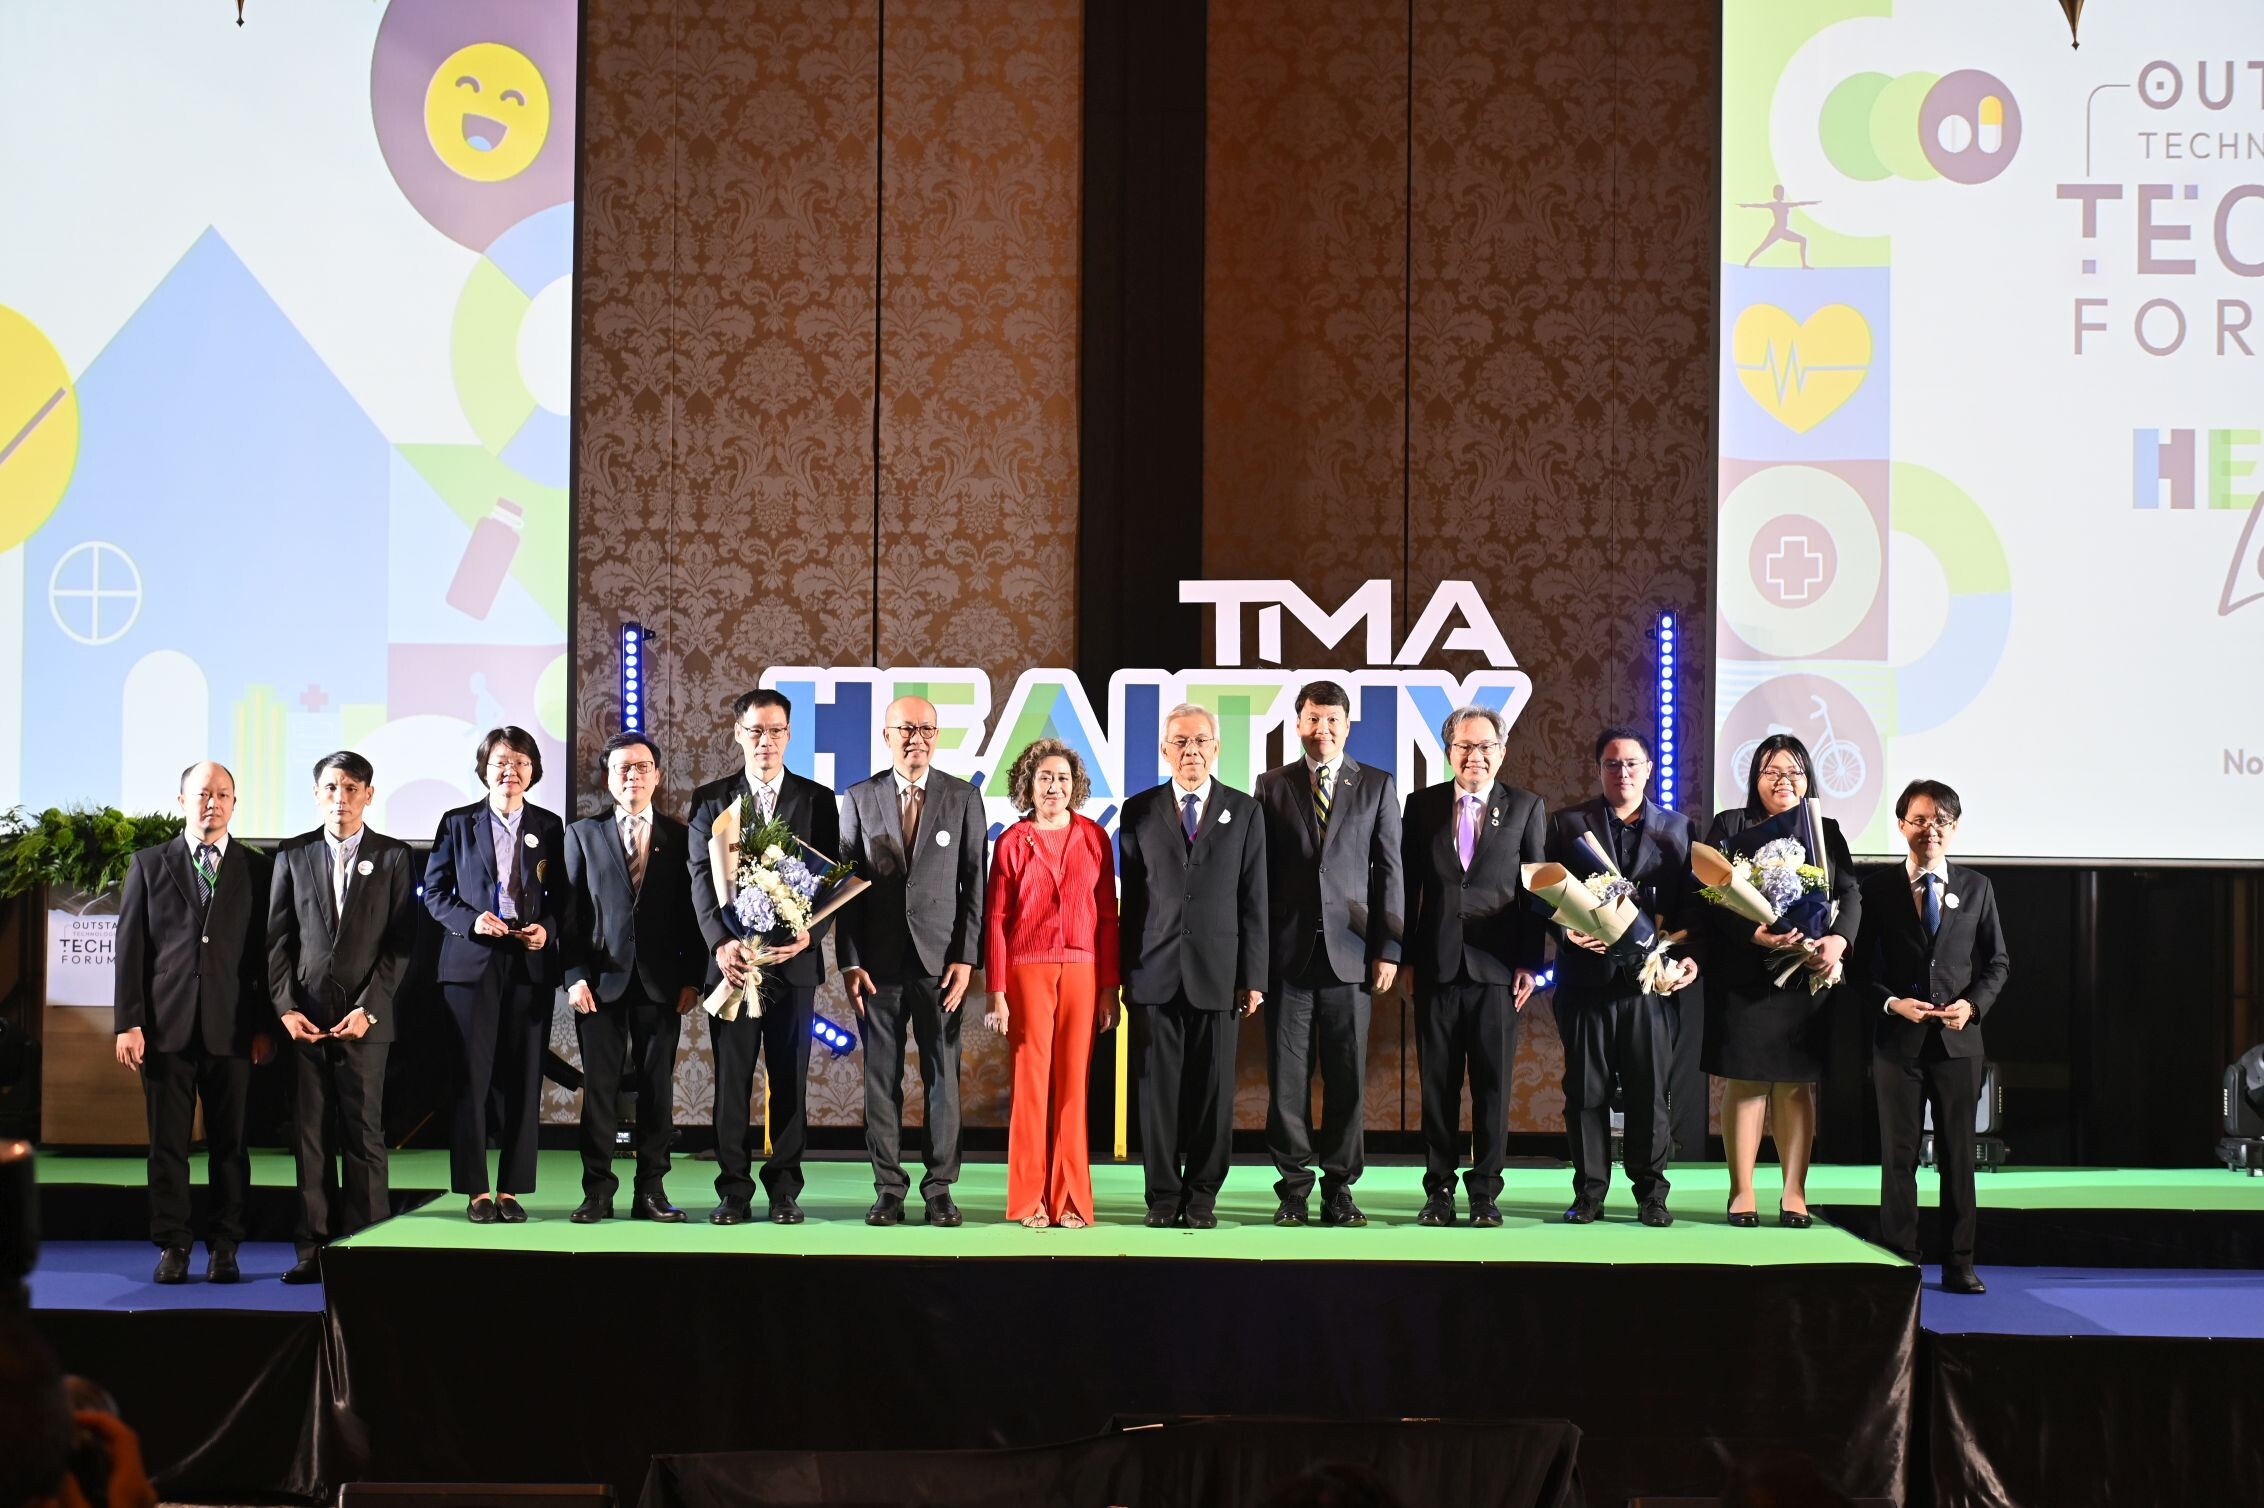 TMA จัดงานขับเคลื่อนนวัตกรรมเพื่อการใช้ชีวิตที่ดี ต่อยอดงานวิจัยและสตาร์ทอัพไทยและเทศ สู่การจับคู่ธุรกิจ พร้อมแสดงความยินดีและเจาะลึกผลงานนักเทคโนโลยีดีเด่น 2566